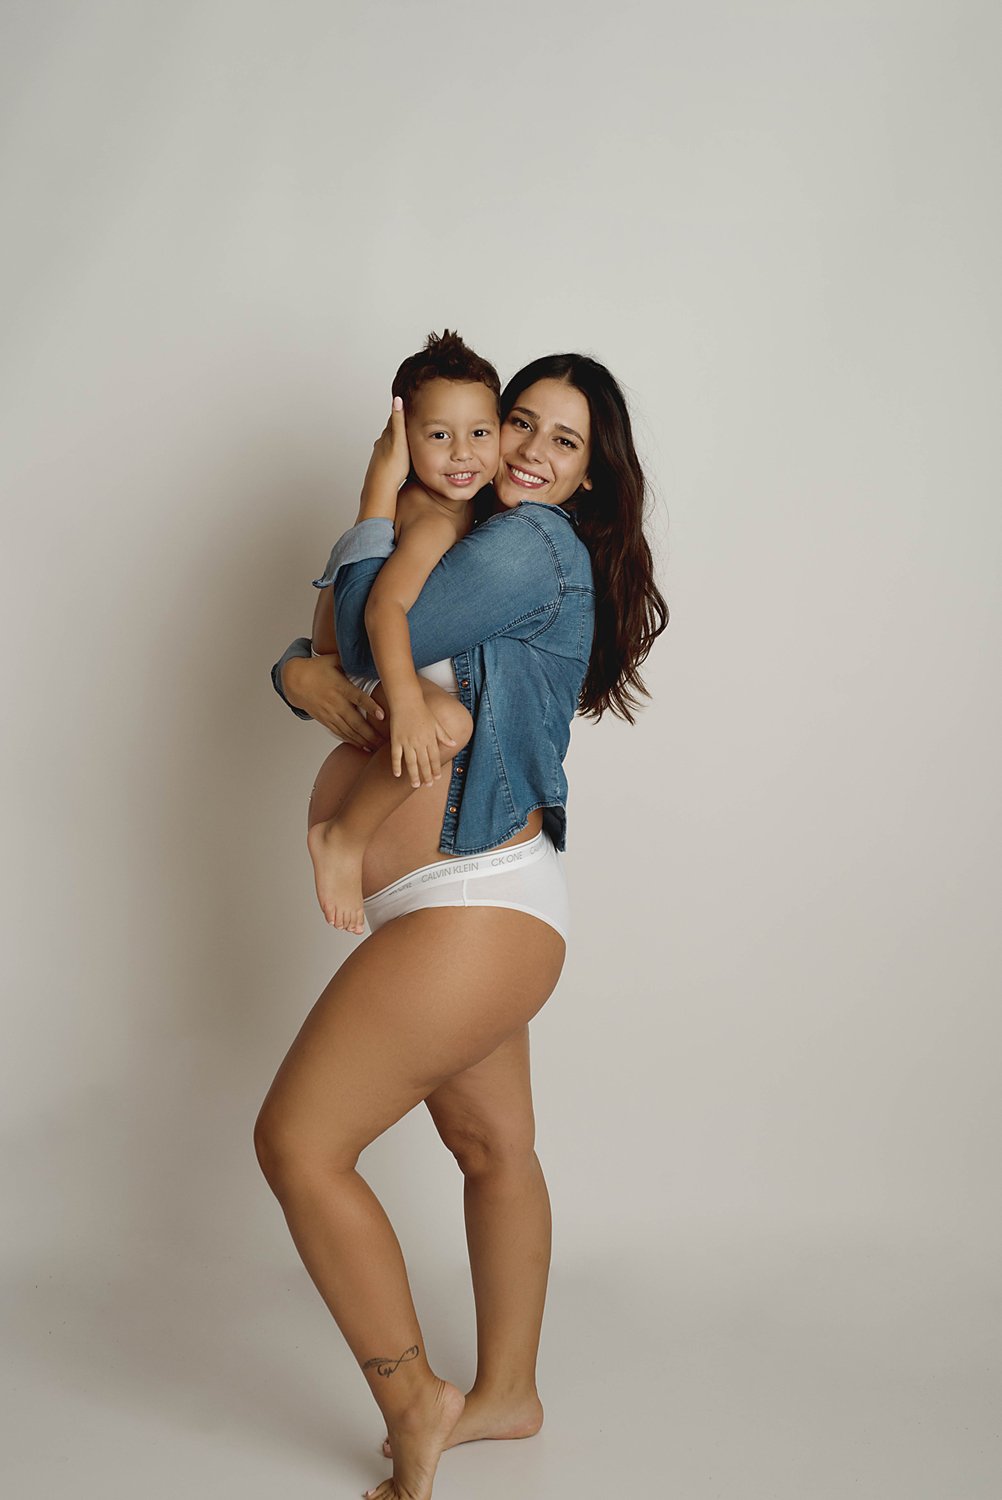 kimberly-gb-photography-maternity-maternidad-fotografia-embarazo-bebe-fotografo-puerto-rico-007.jpg